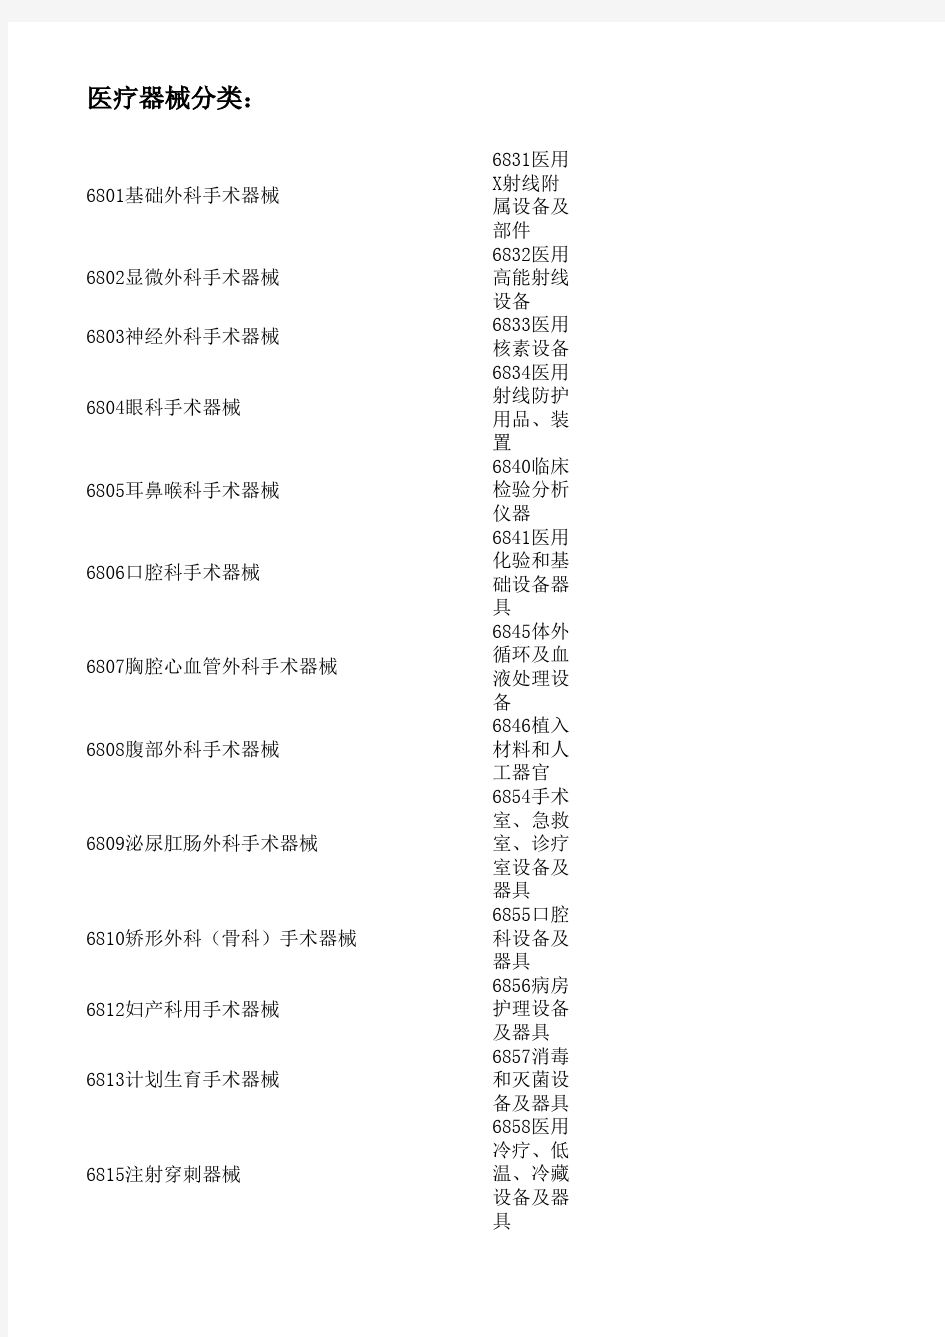 中国医疗器械产品分类目录_大类清单